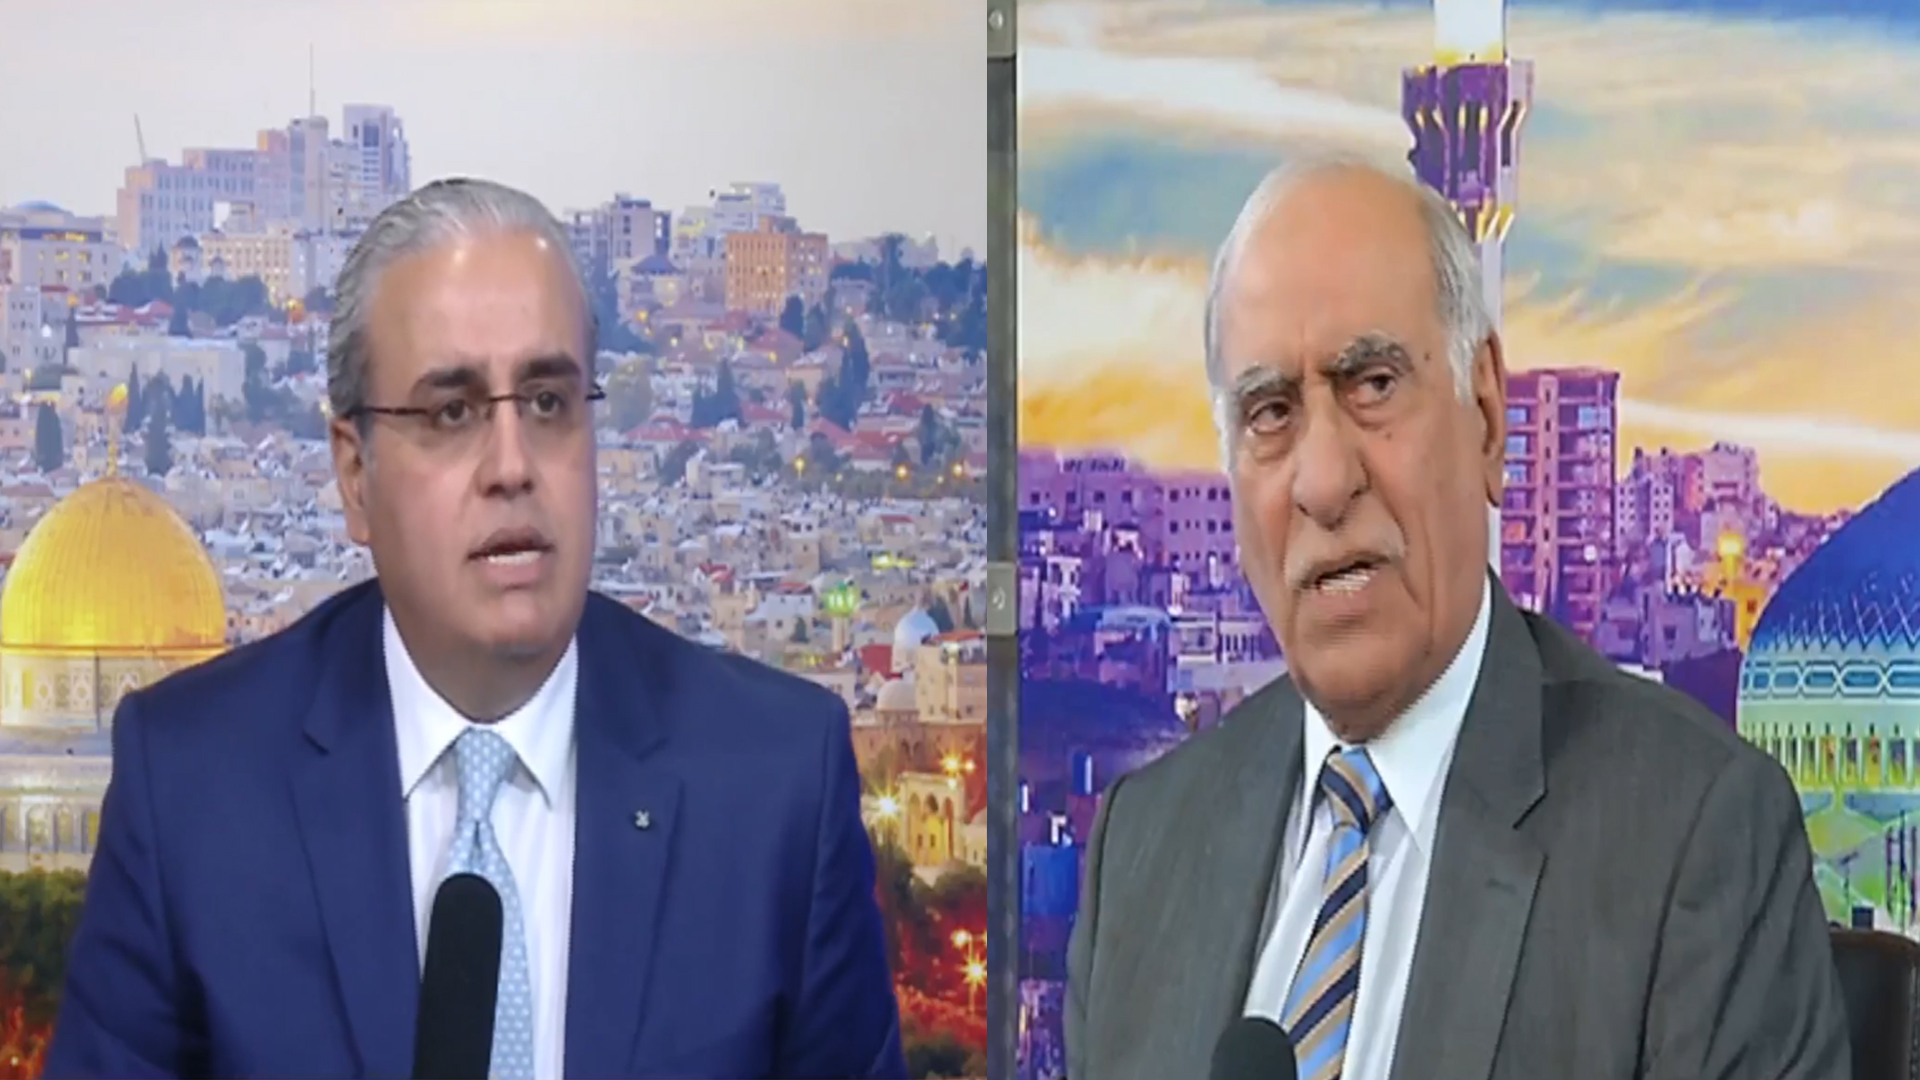 مختصون : تجربة الأحزاب ليست جديدة على الدولة الأردنية -  فيديو